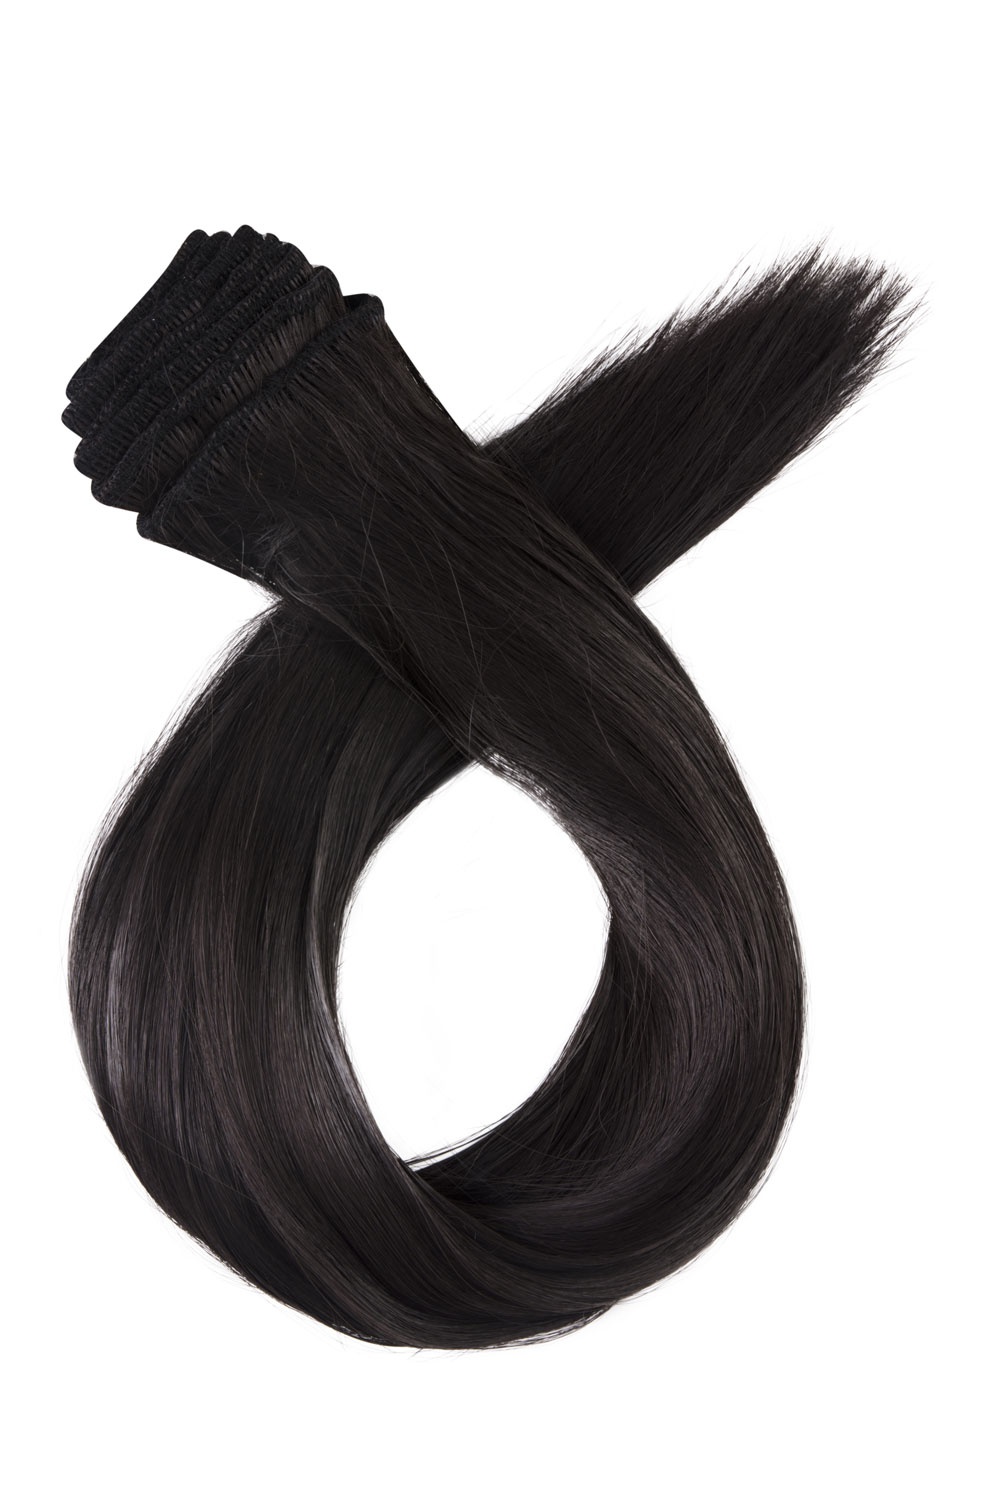 Stredne hnedé jednopásové vlasy, rovné, 60cm, 115g, farba 4